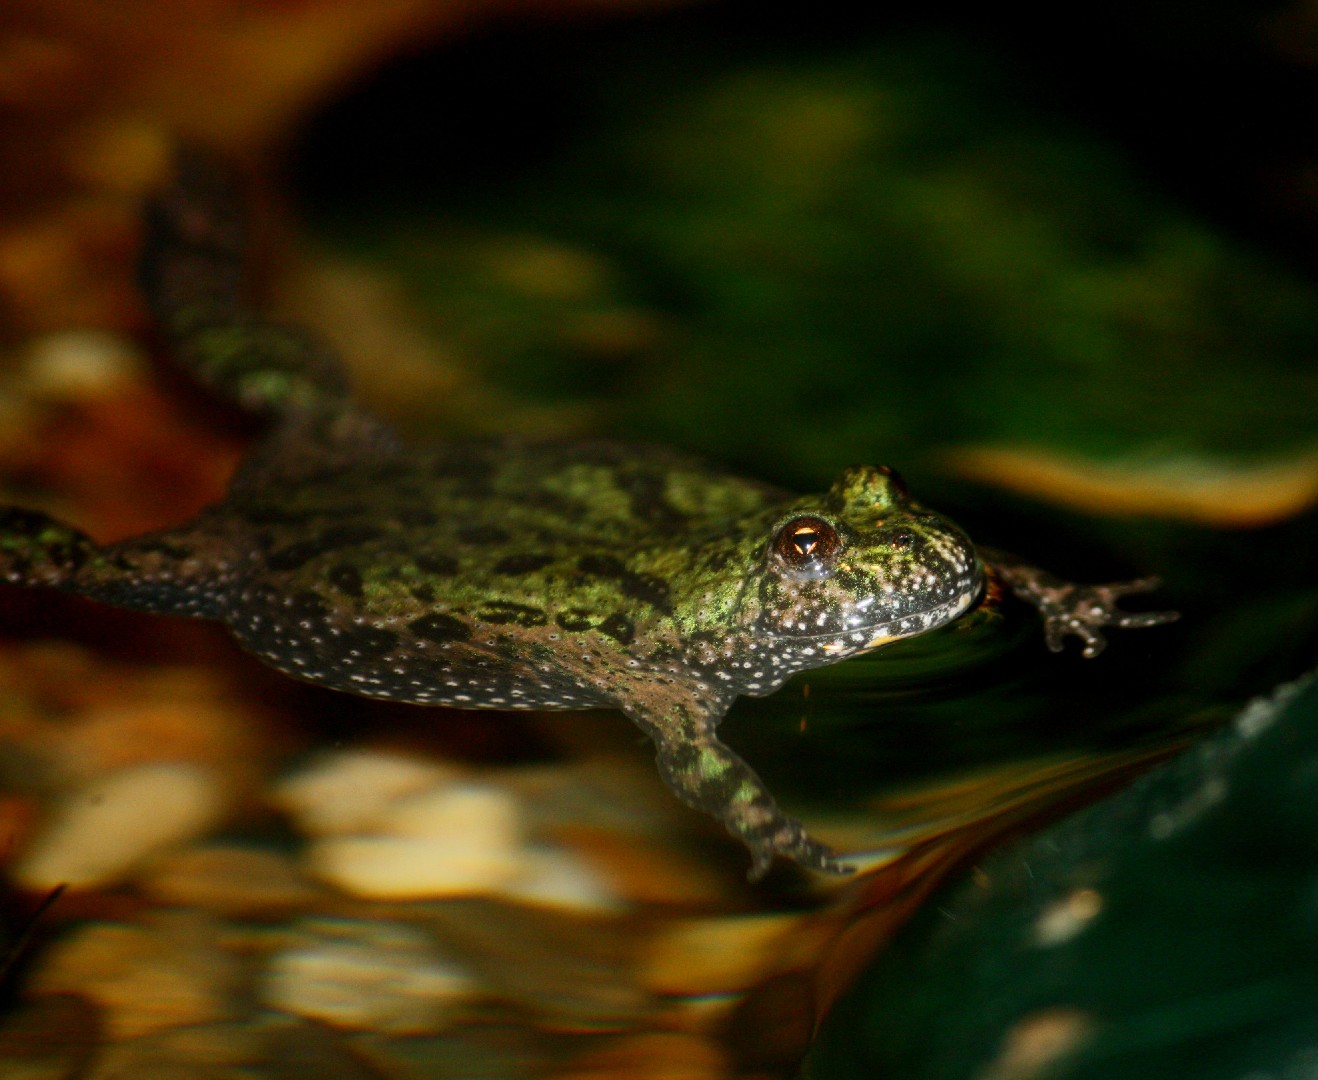 Fire-bellied toads (Bombina)